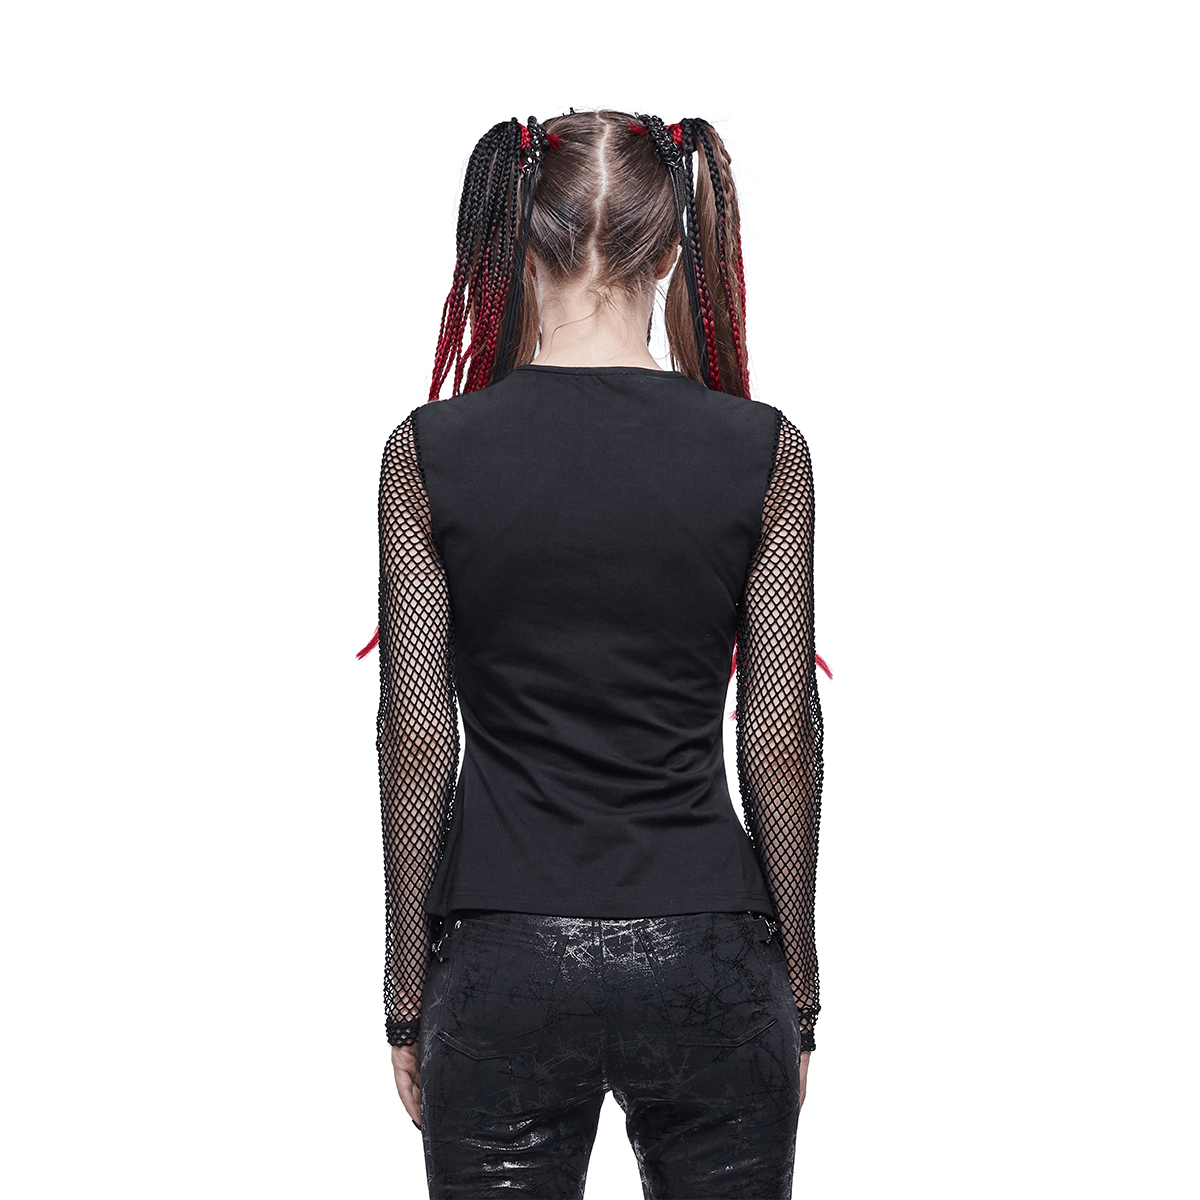 Women's Long Sleeves Top with Pentagram / Gothic Style Mesh Sleeves Black Top - HARD'N'HEAVY